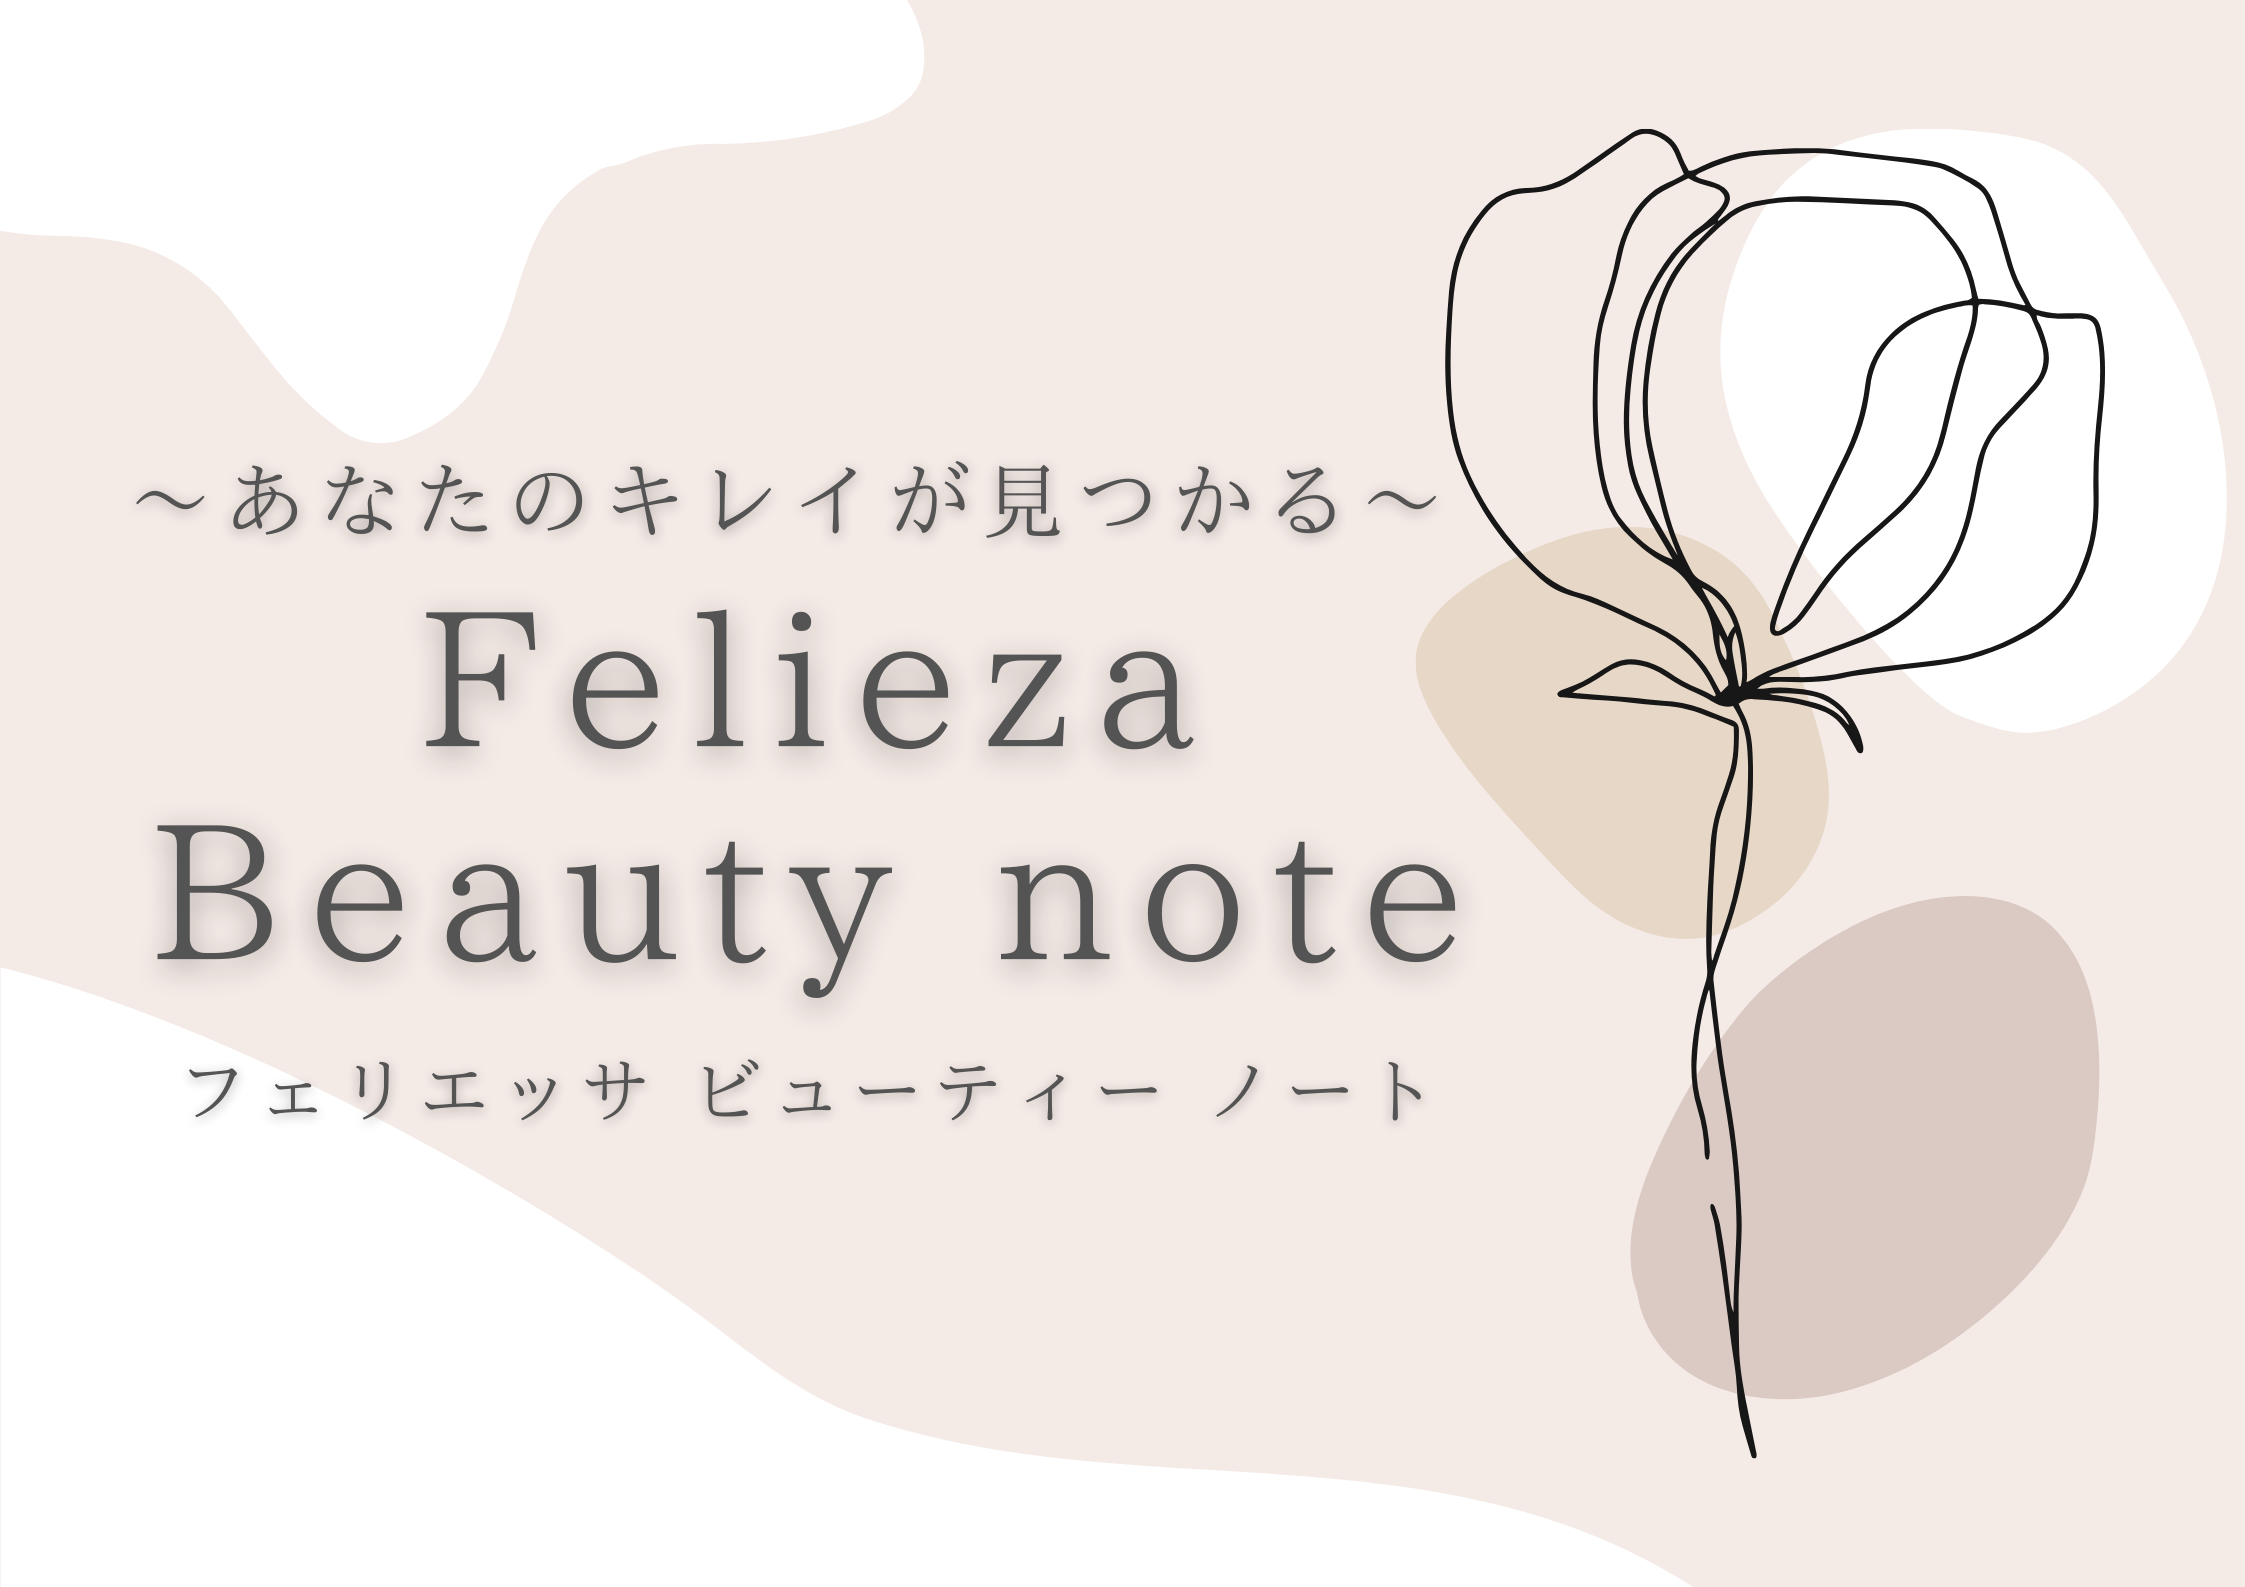 Felieza beauty note